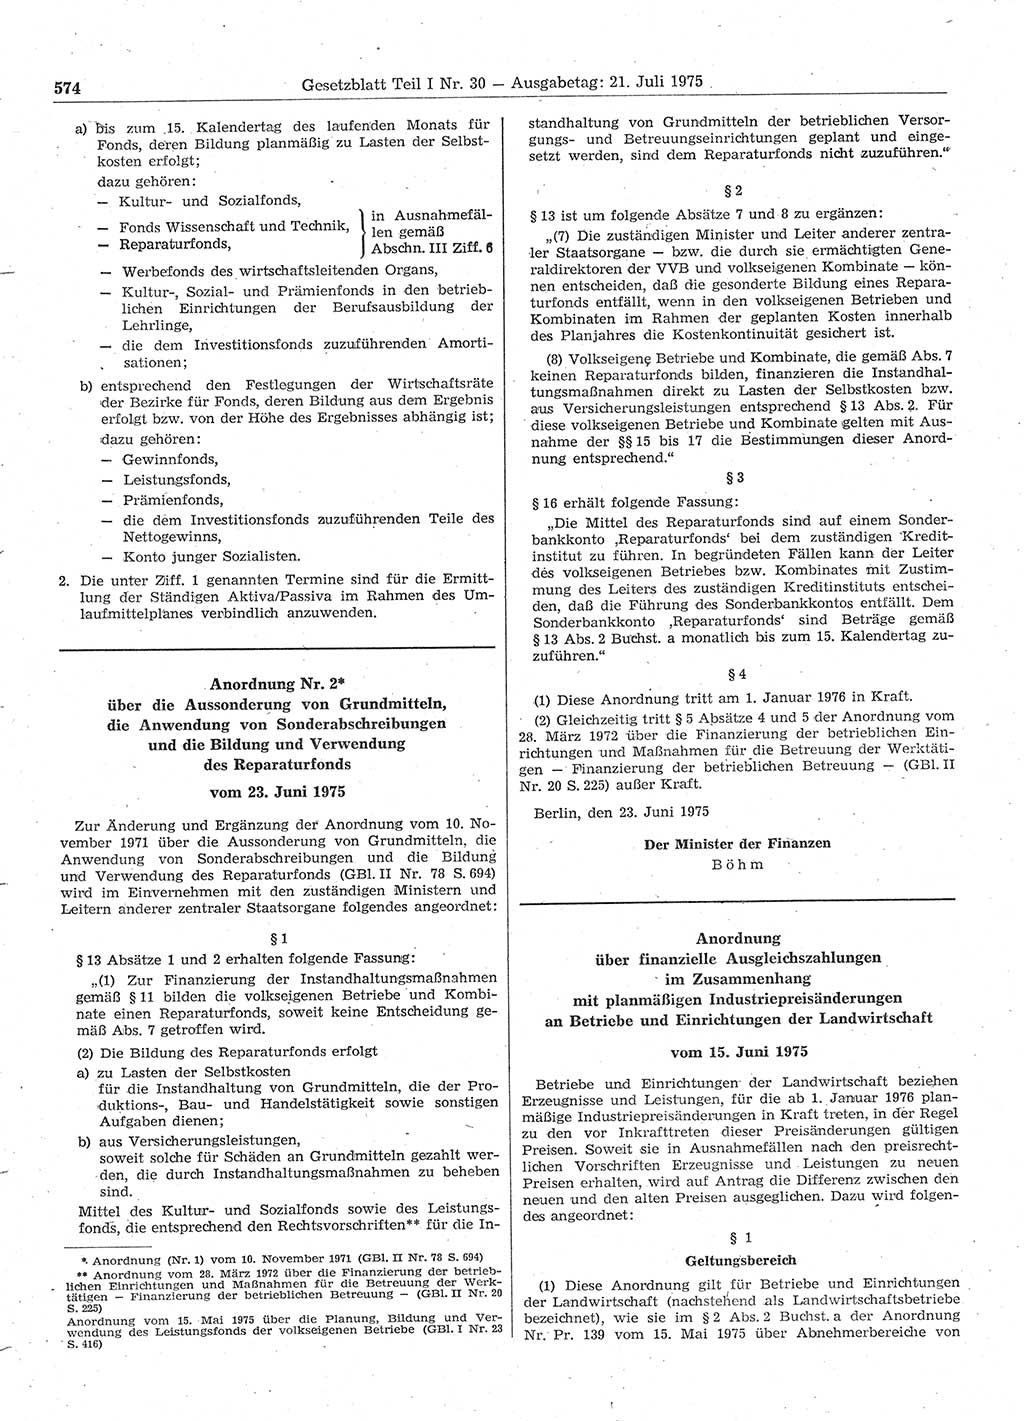 Gesetzblatt (GBl.) der Deutschen Demokratischen Republik (DDR) Teil Ⅰ 1975, Seite 574 (GBl. DDR Ⅰ 1975, S. 574)